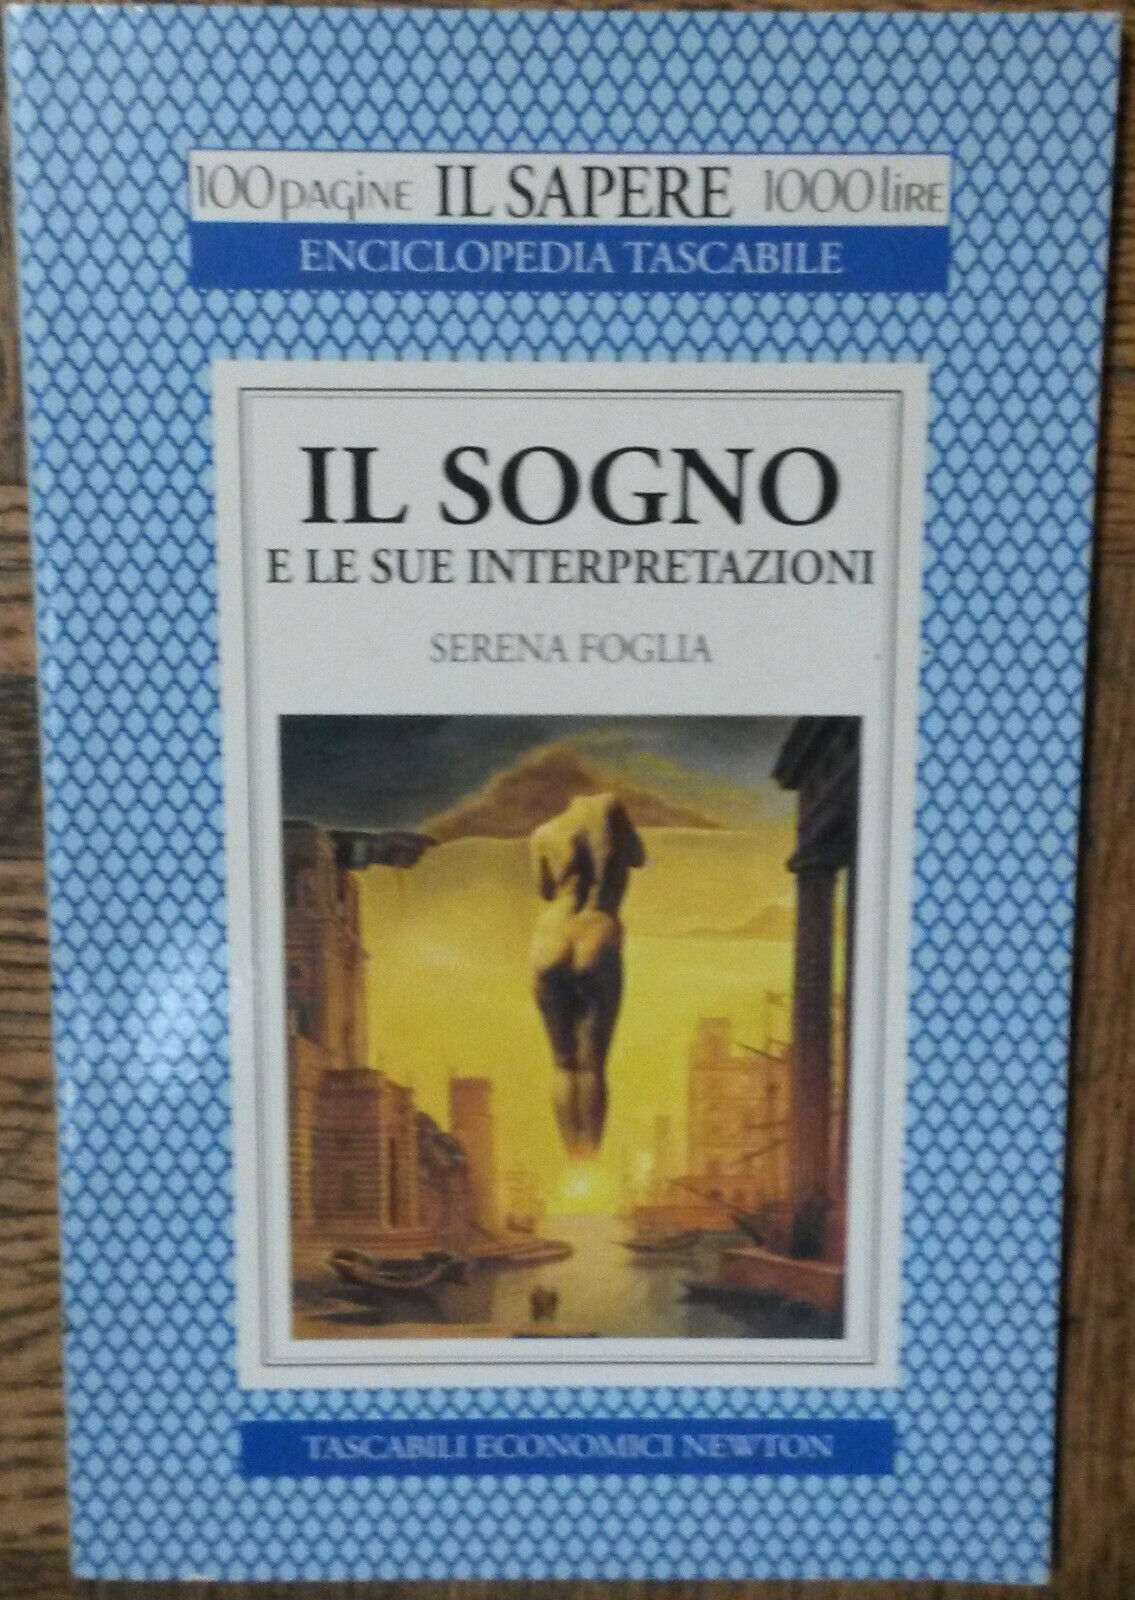 Il sogno e le sue interpretazioni-Serena Foglia-Tascabili EconomiciNewton,1994-R